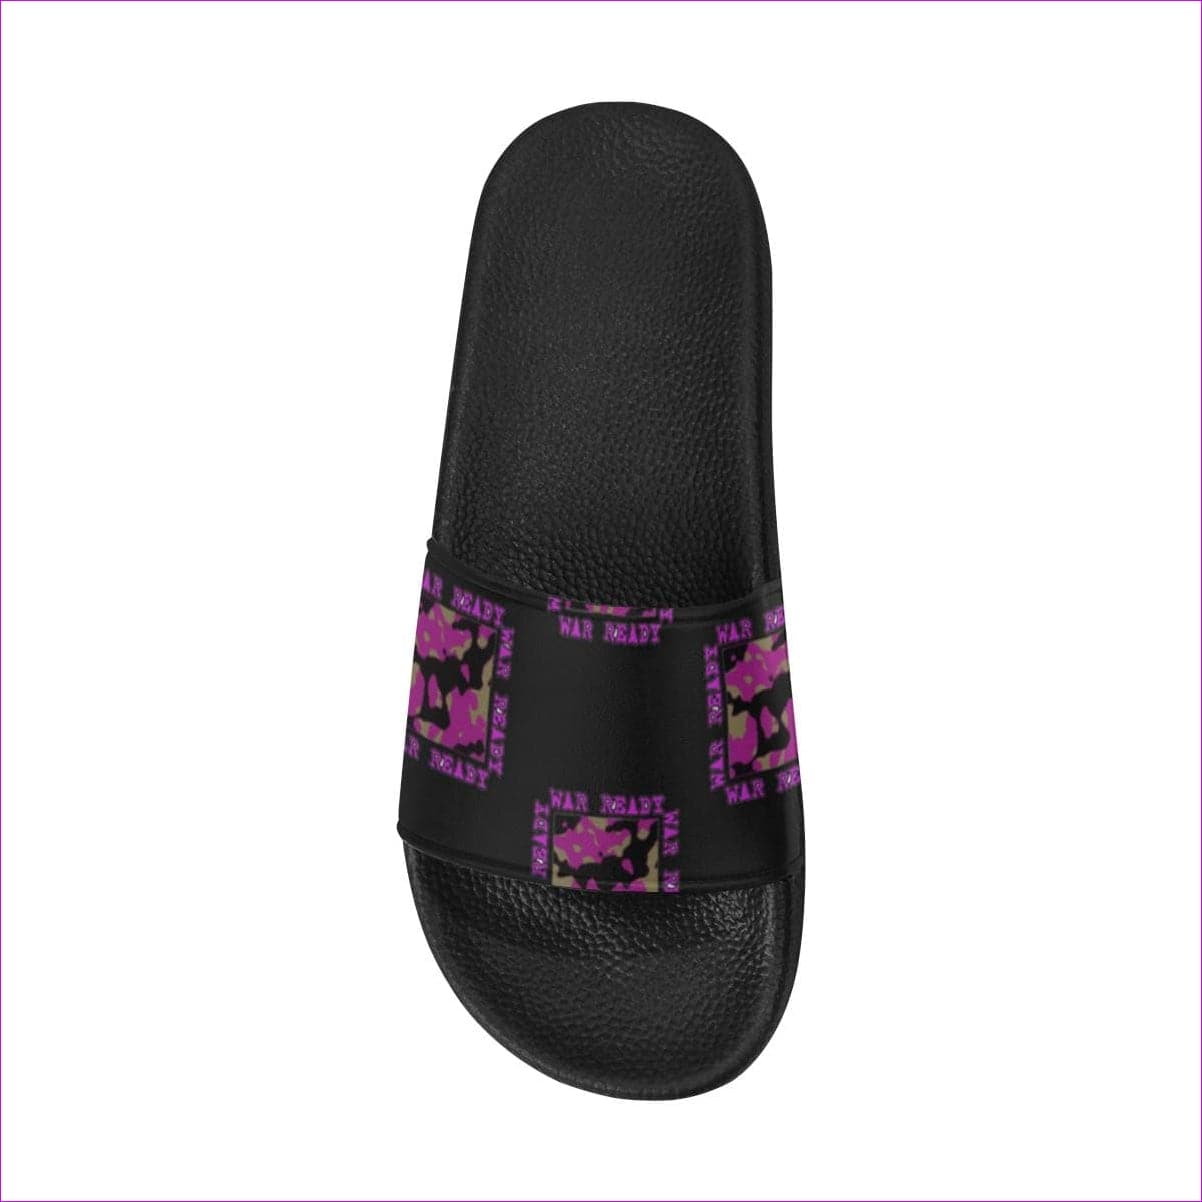 - War Ready Women's Slide Sandals - womens shoe at TFC&H Co.